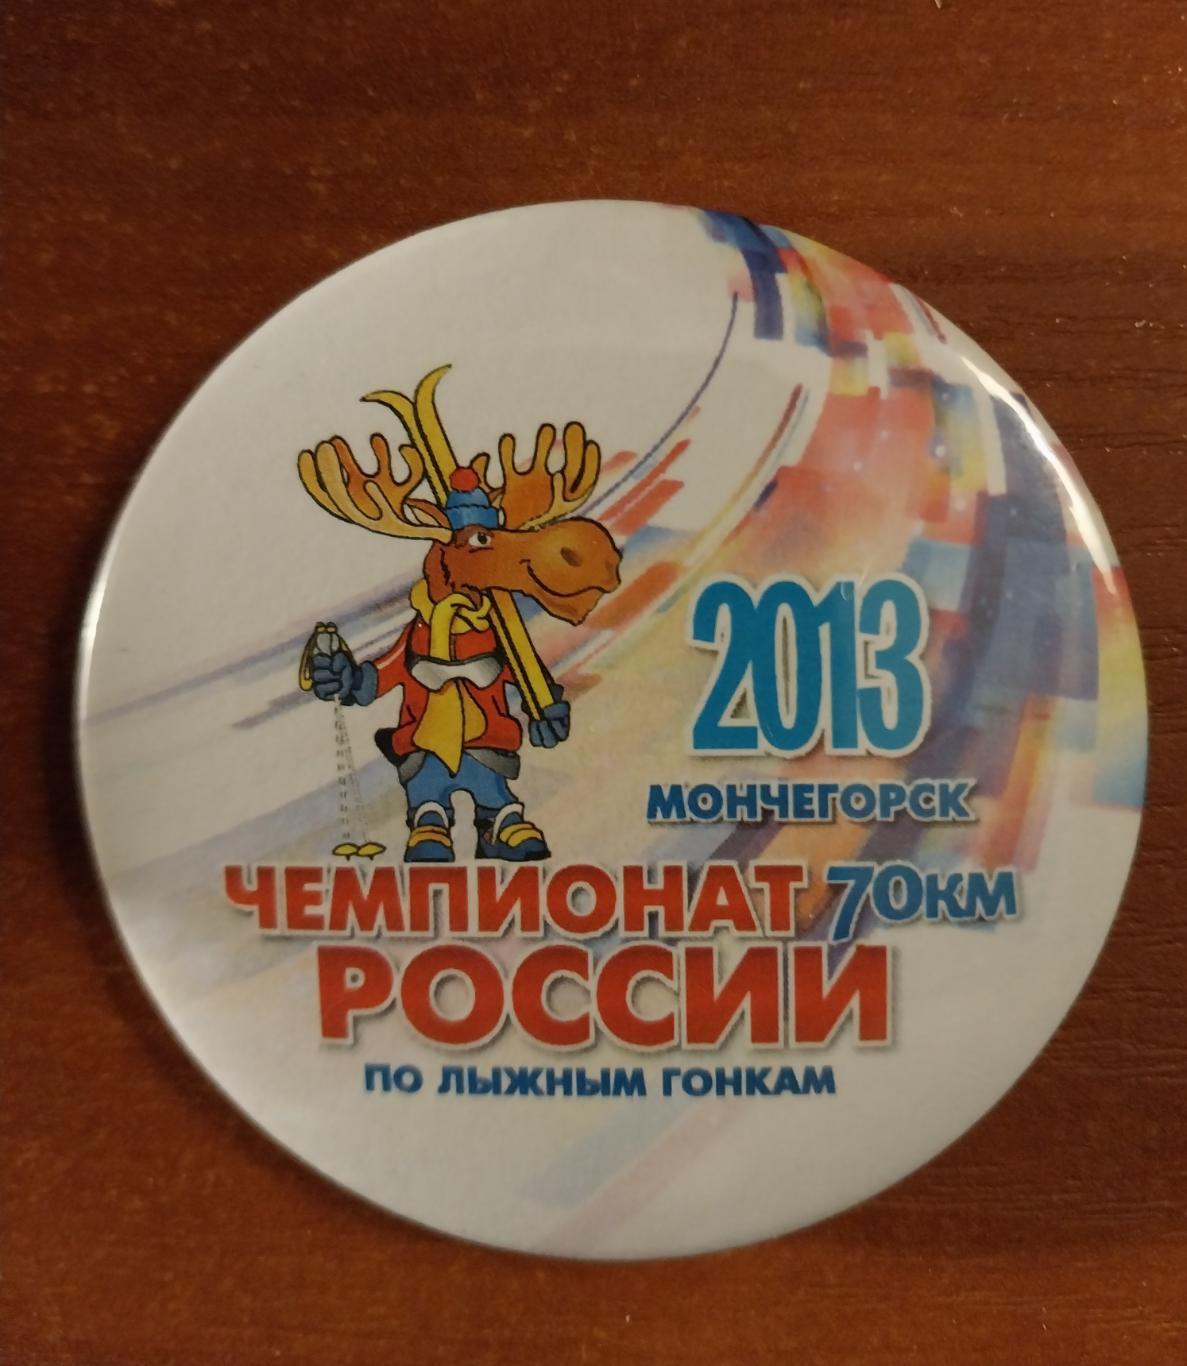 Лыжные гонки. Чемпионат России 2013. Мончегорск. 70 км